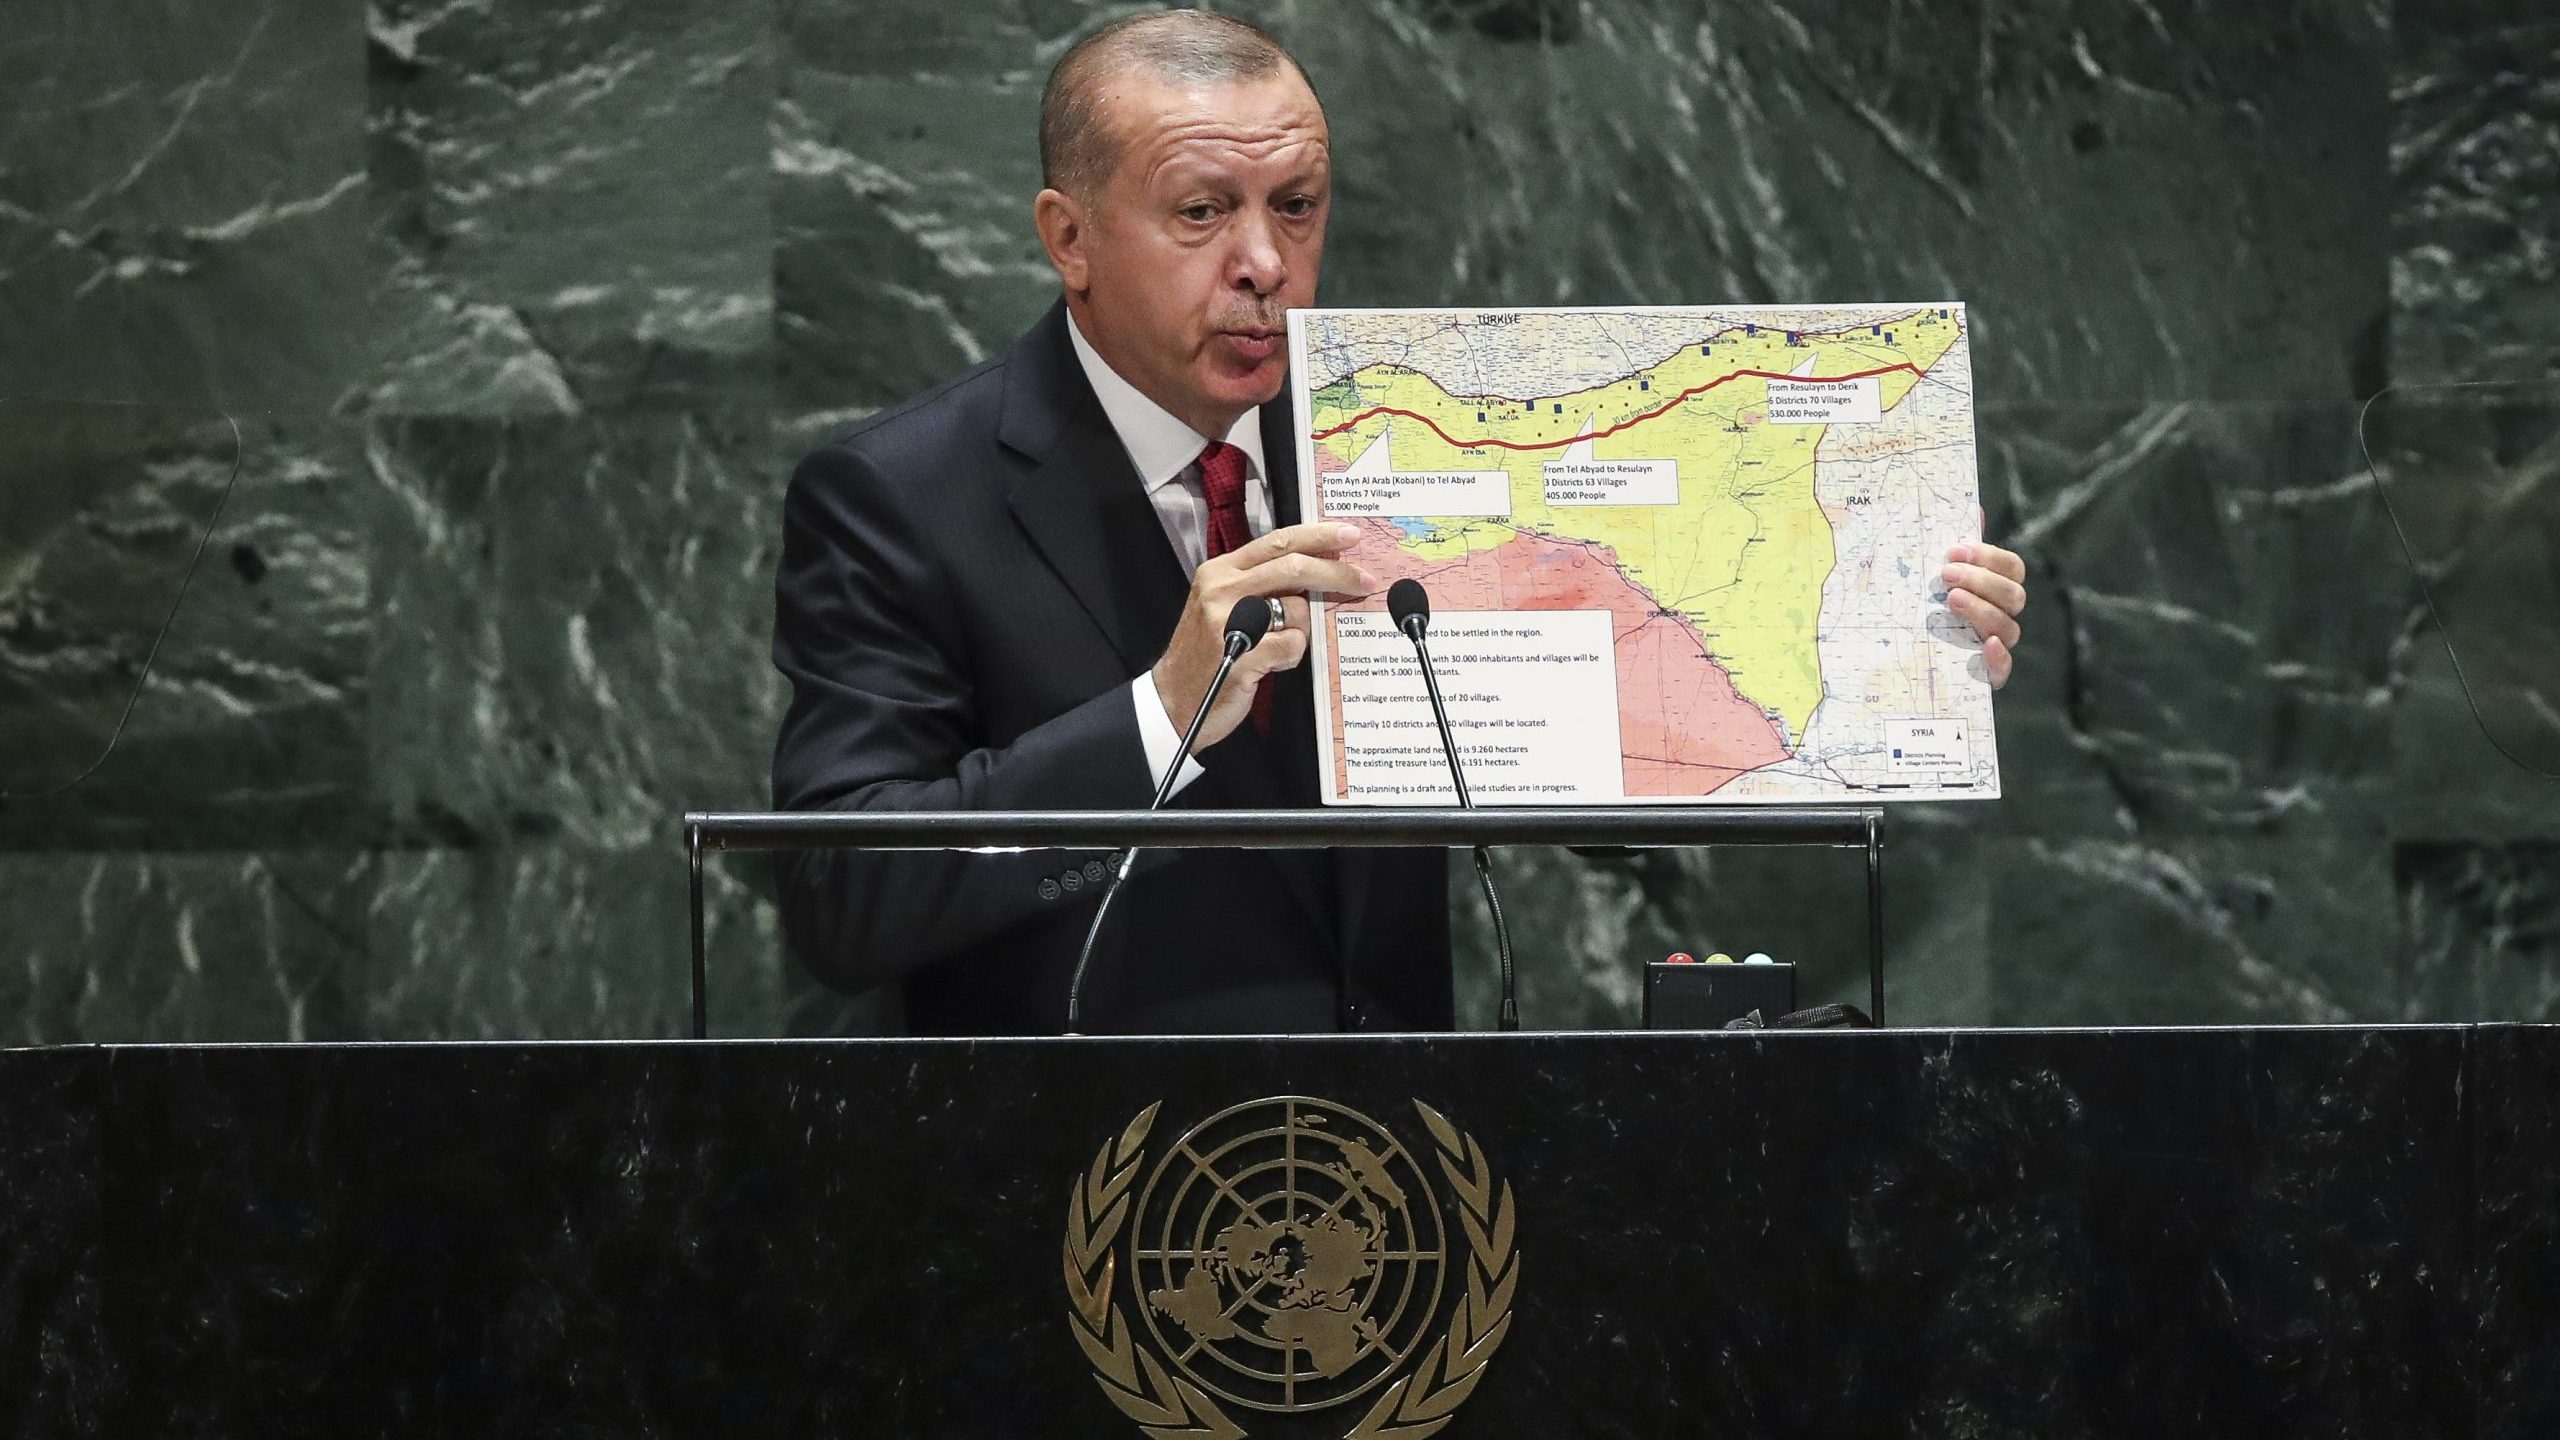 Recap: Regime and Kurds Threatened by Turkish “Safe Zone” Schemes